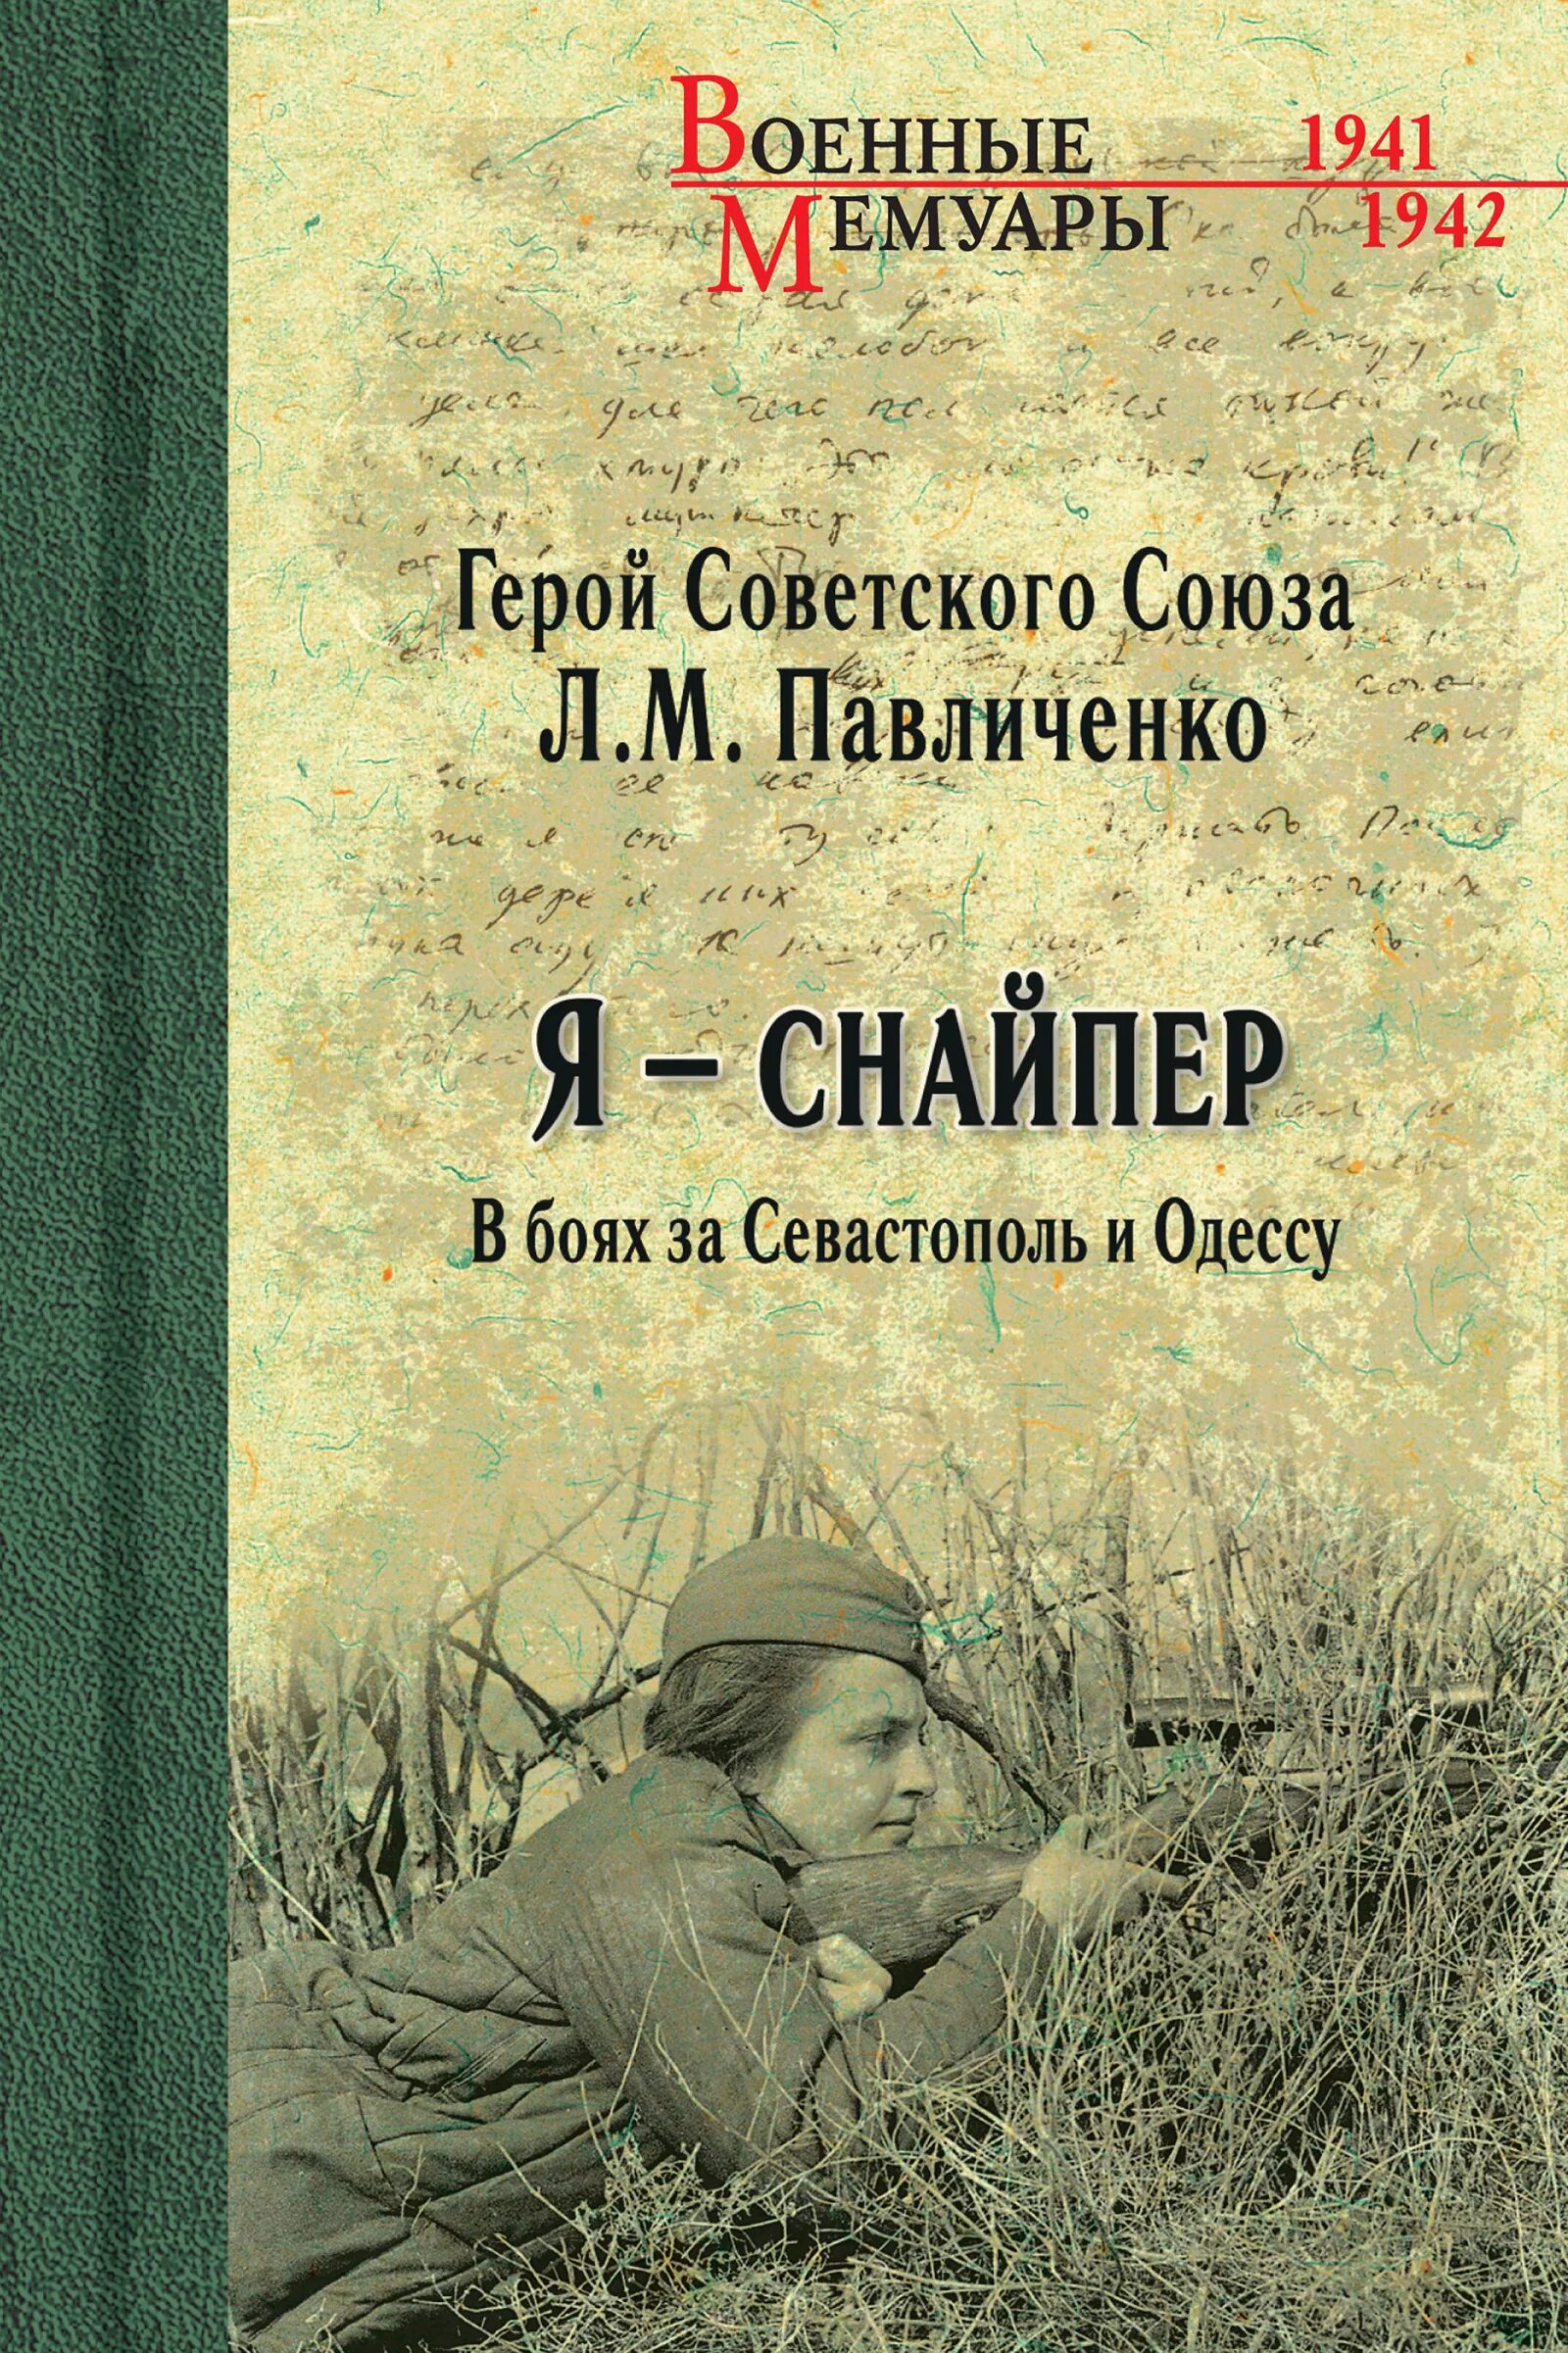 Я снайпер. Книга Павличенко я снайпер. Павличенко л.м. - я – снайпер. В боях за Севастополь и Одессу.